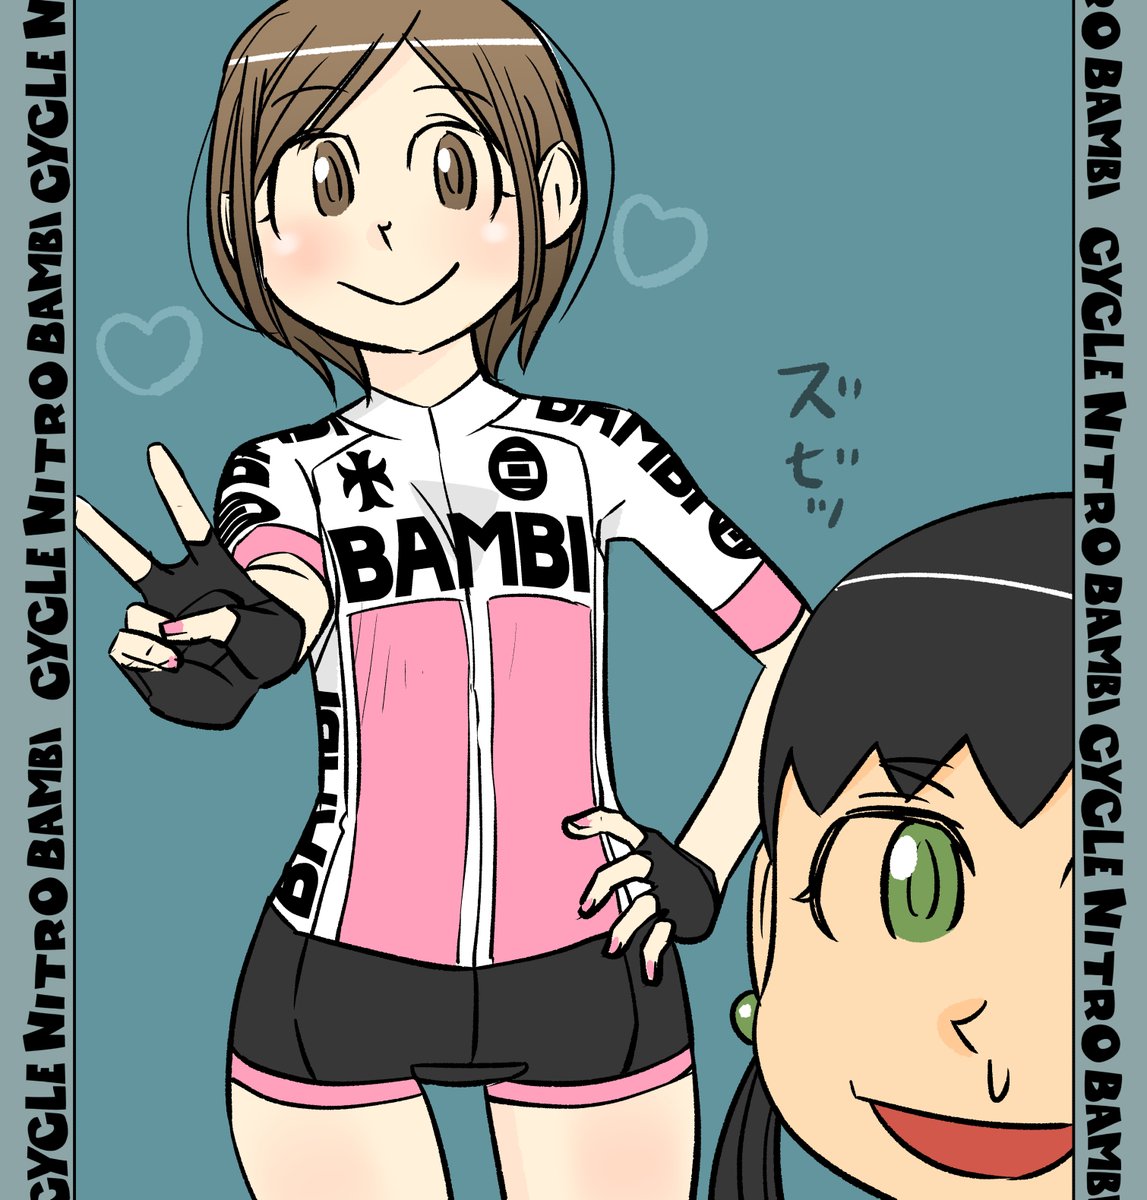 【サイクル。】元気ともちゃん^^    #自転車 #漫画 #イラスト #マンガ #ロードバイク女子 #ロードバイク #サイクリング